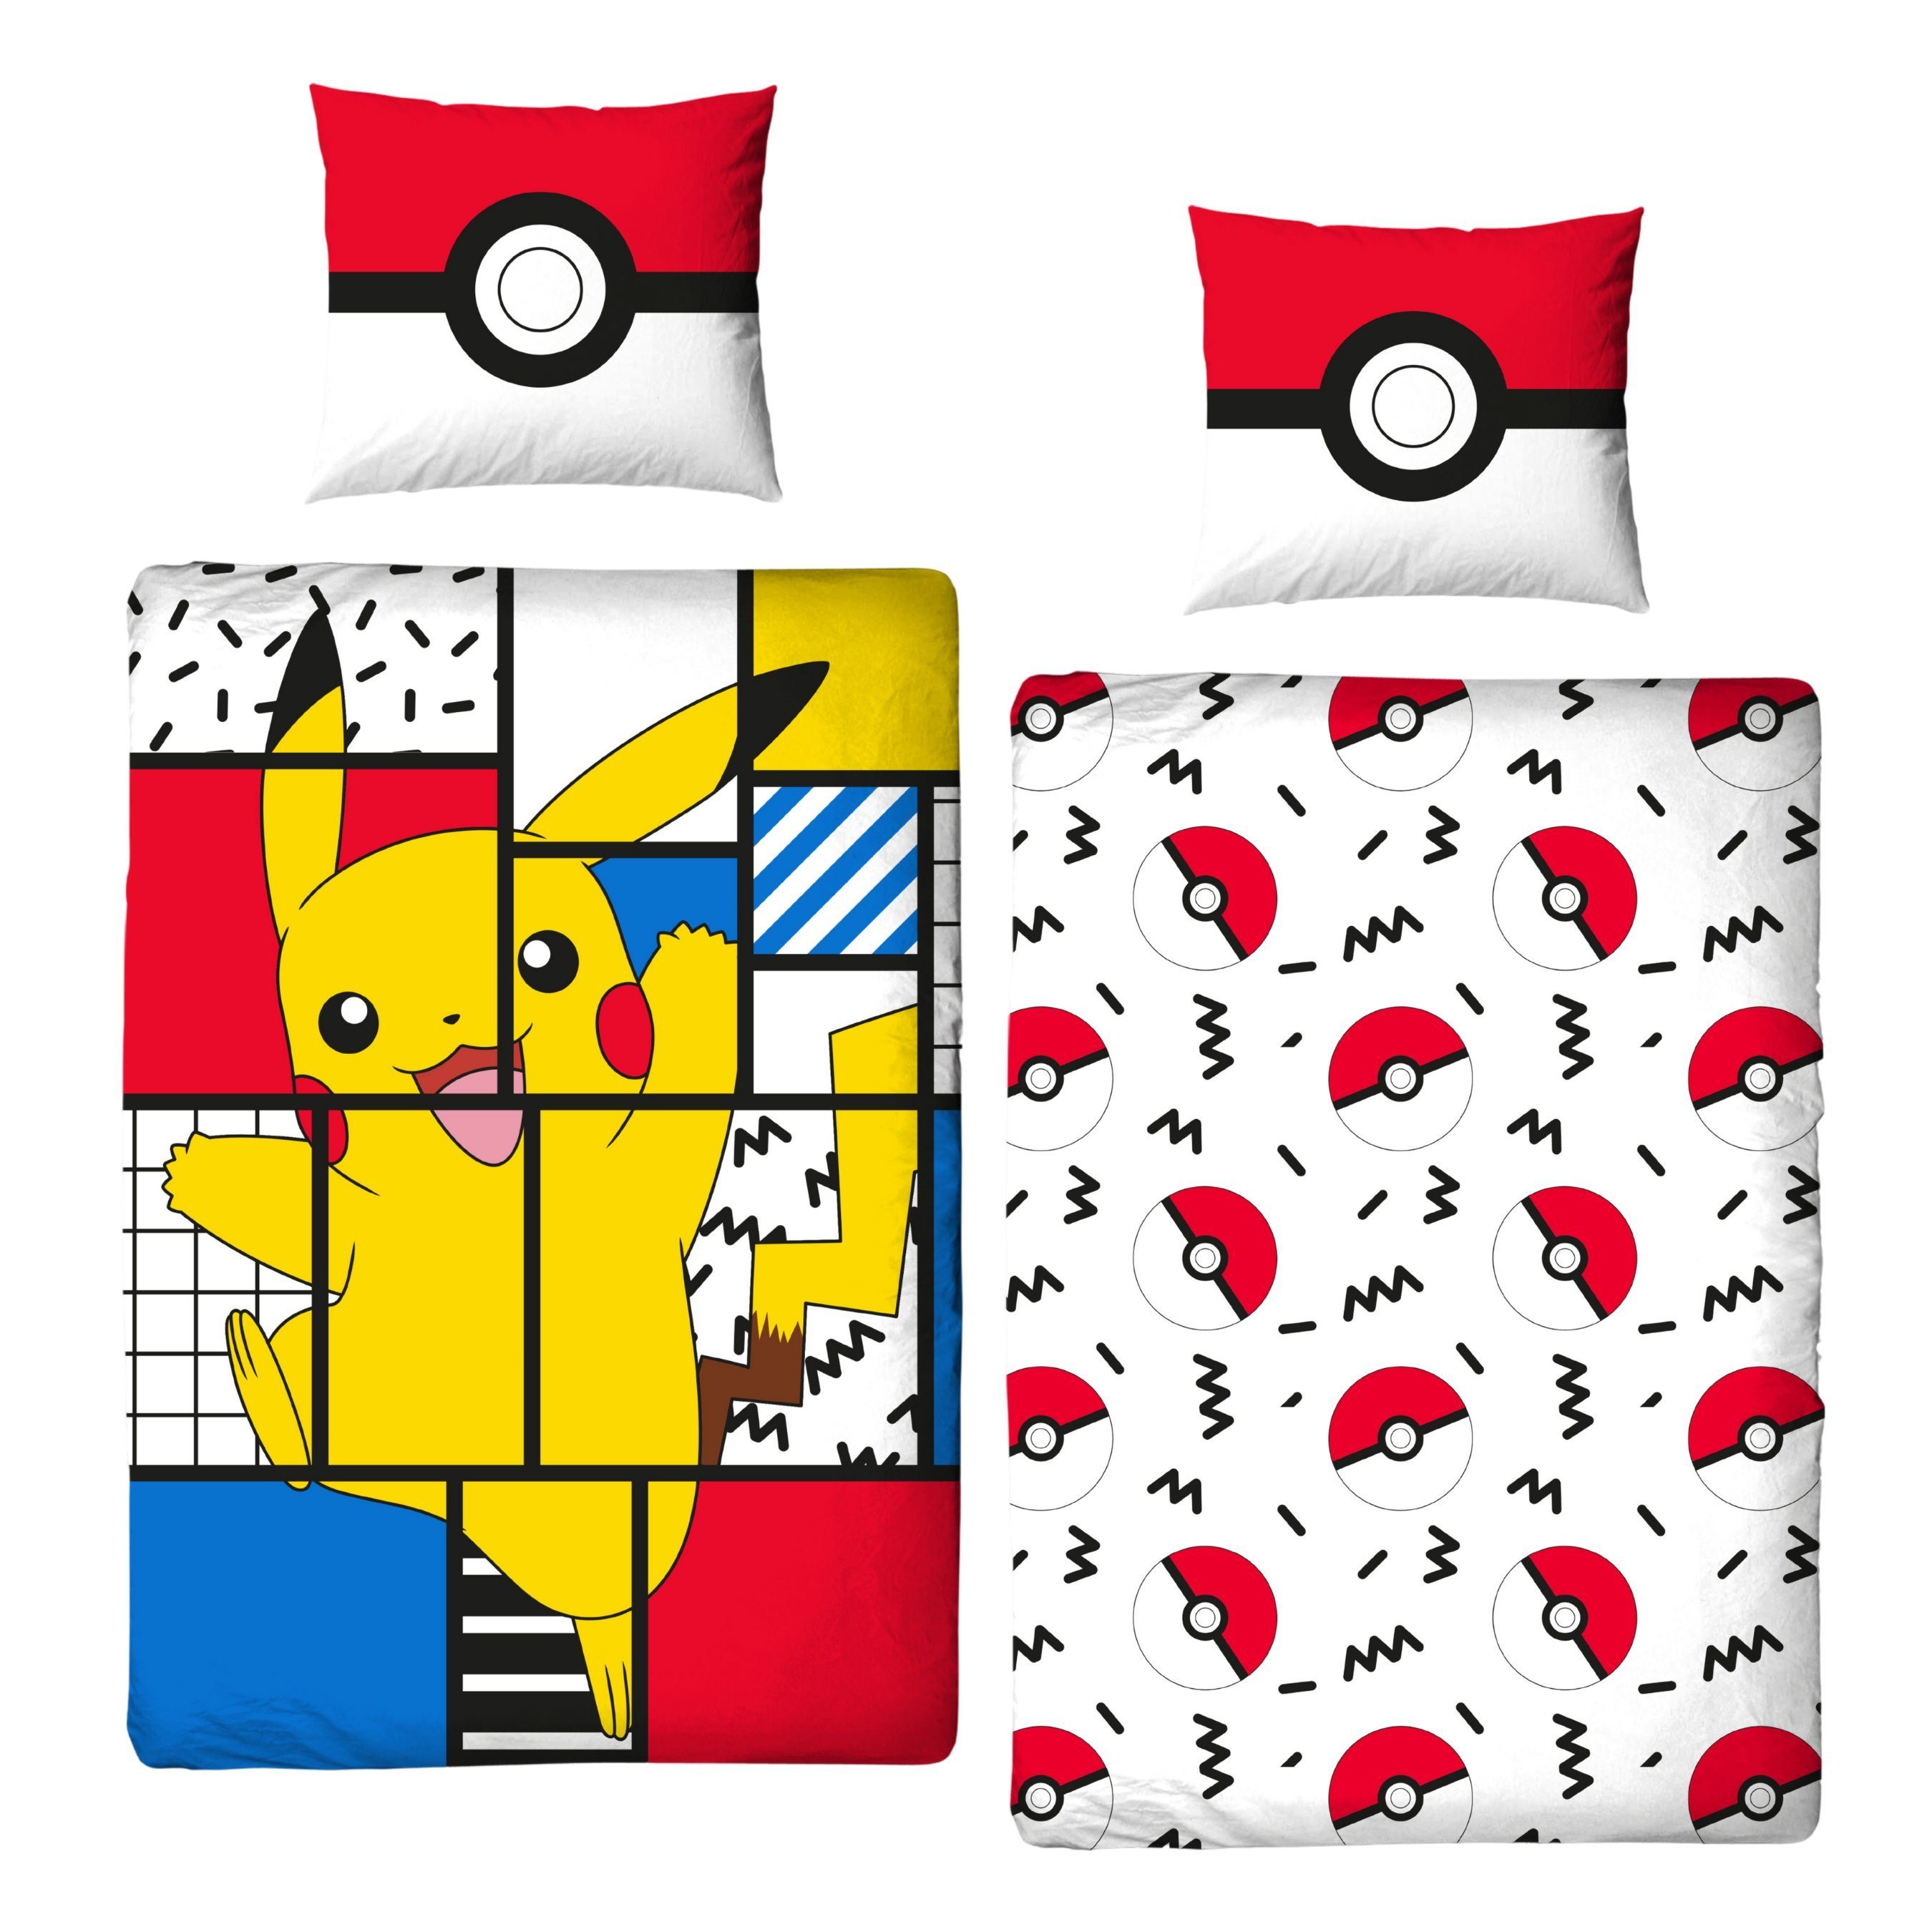 Bettwäsche »Pokémon Bettwäsche 135x200 + 80x80 cm 2 tlg., 100 % Baumwolle,  Pikachu für Kinder, Teenager, Jugend«, MTOnlinehandel online kaufen | OTTO